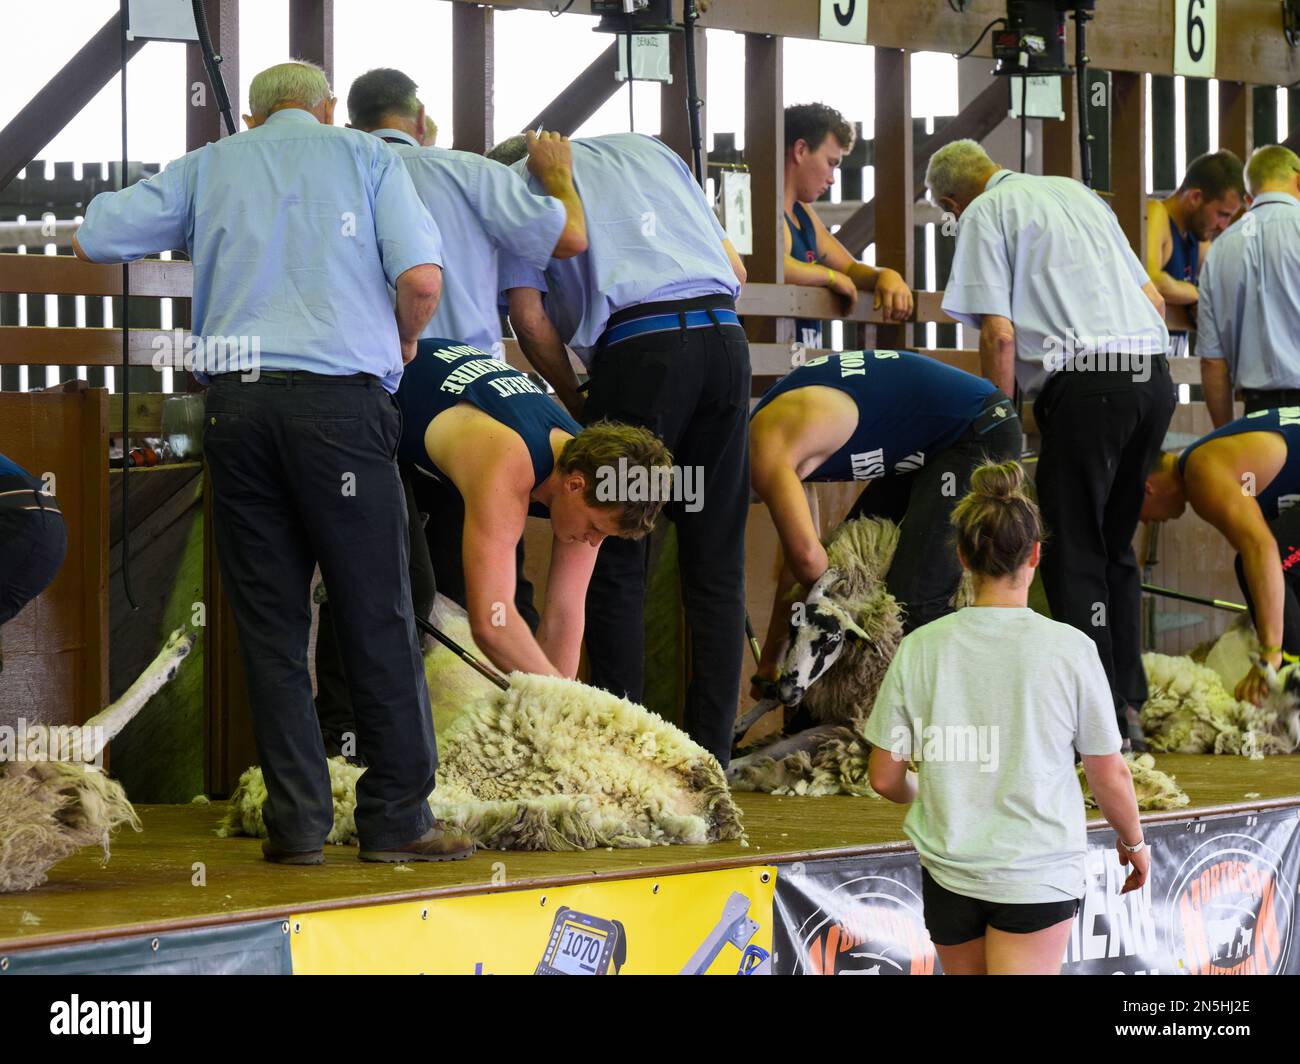 Männliche Walzenlader, die von Juroren beobachtet werden, nehmen am Speed Sheep Searing Turnier (mechanische Scheren) Teil – Great Yorkshire Show Shed, Harrogate, England, Großbritannien. Stockfoto